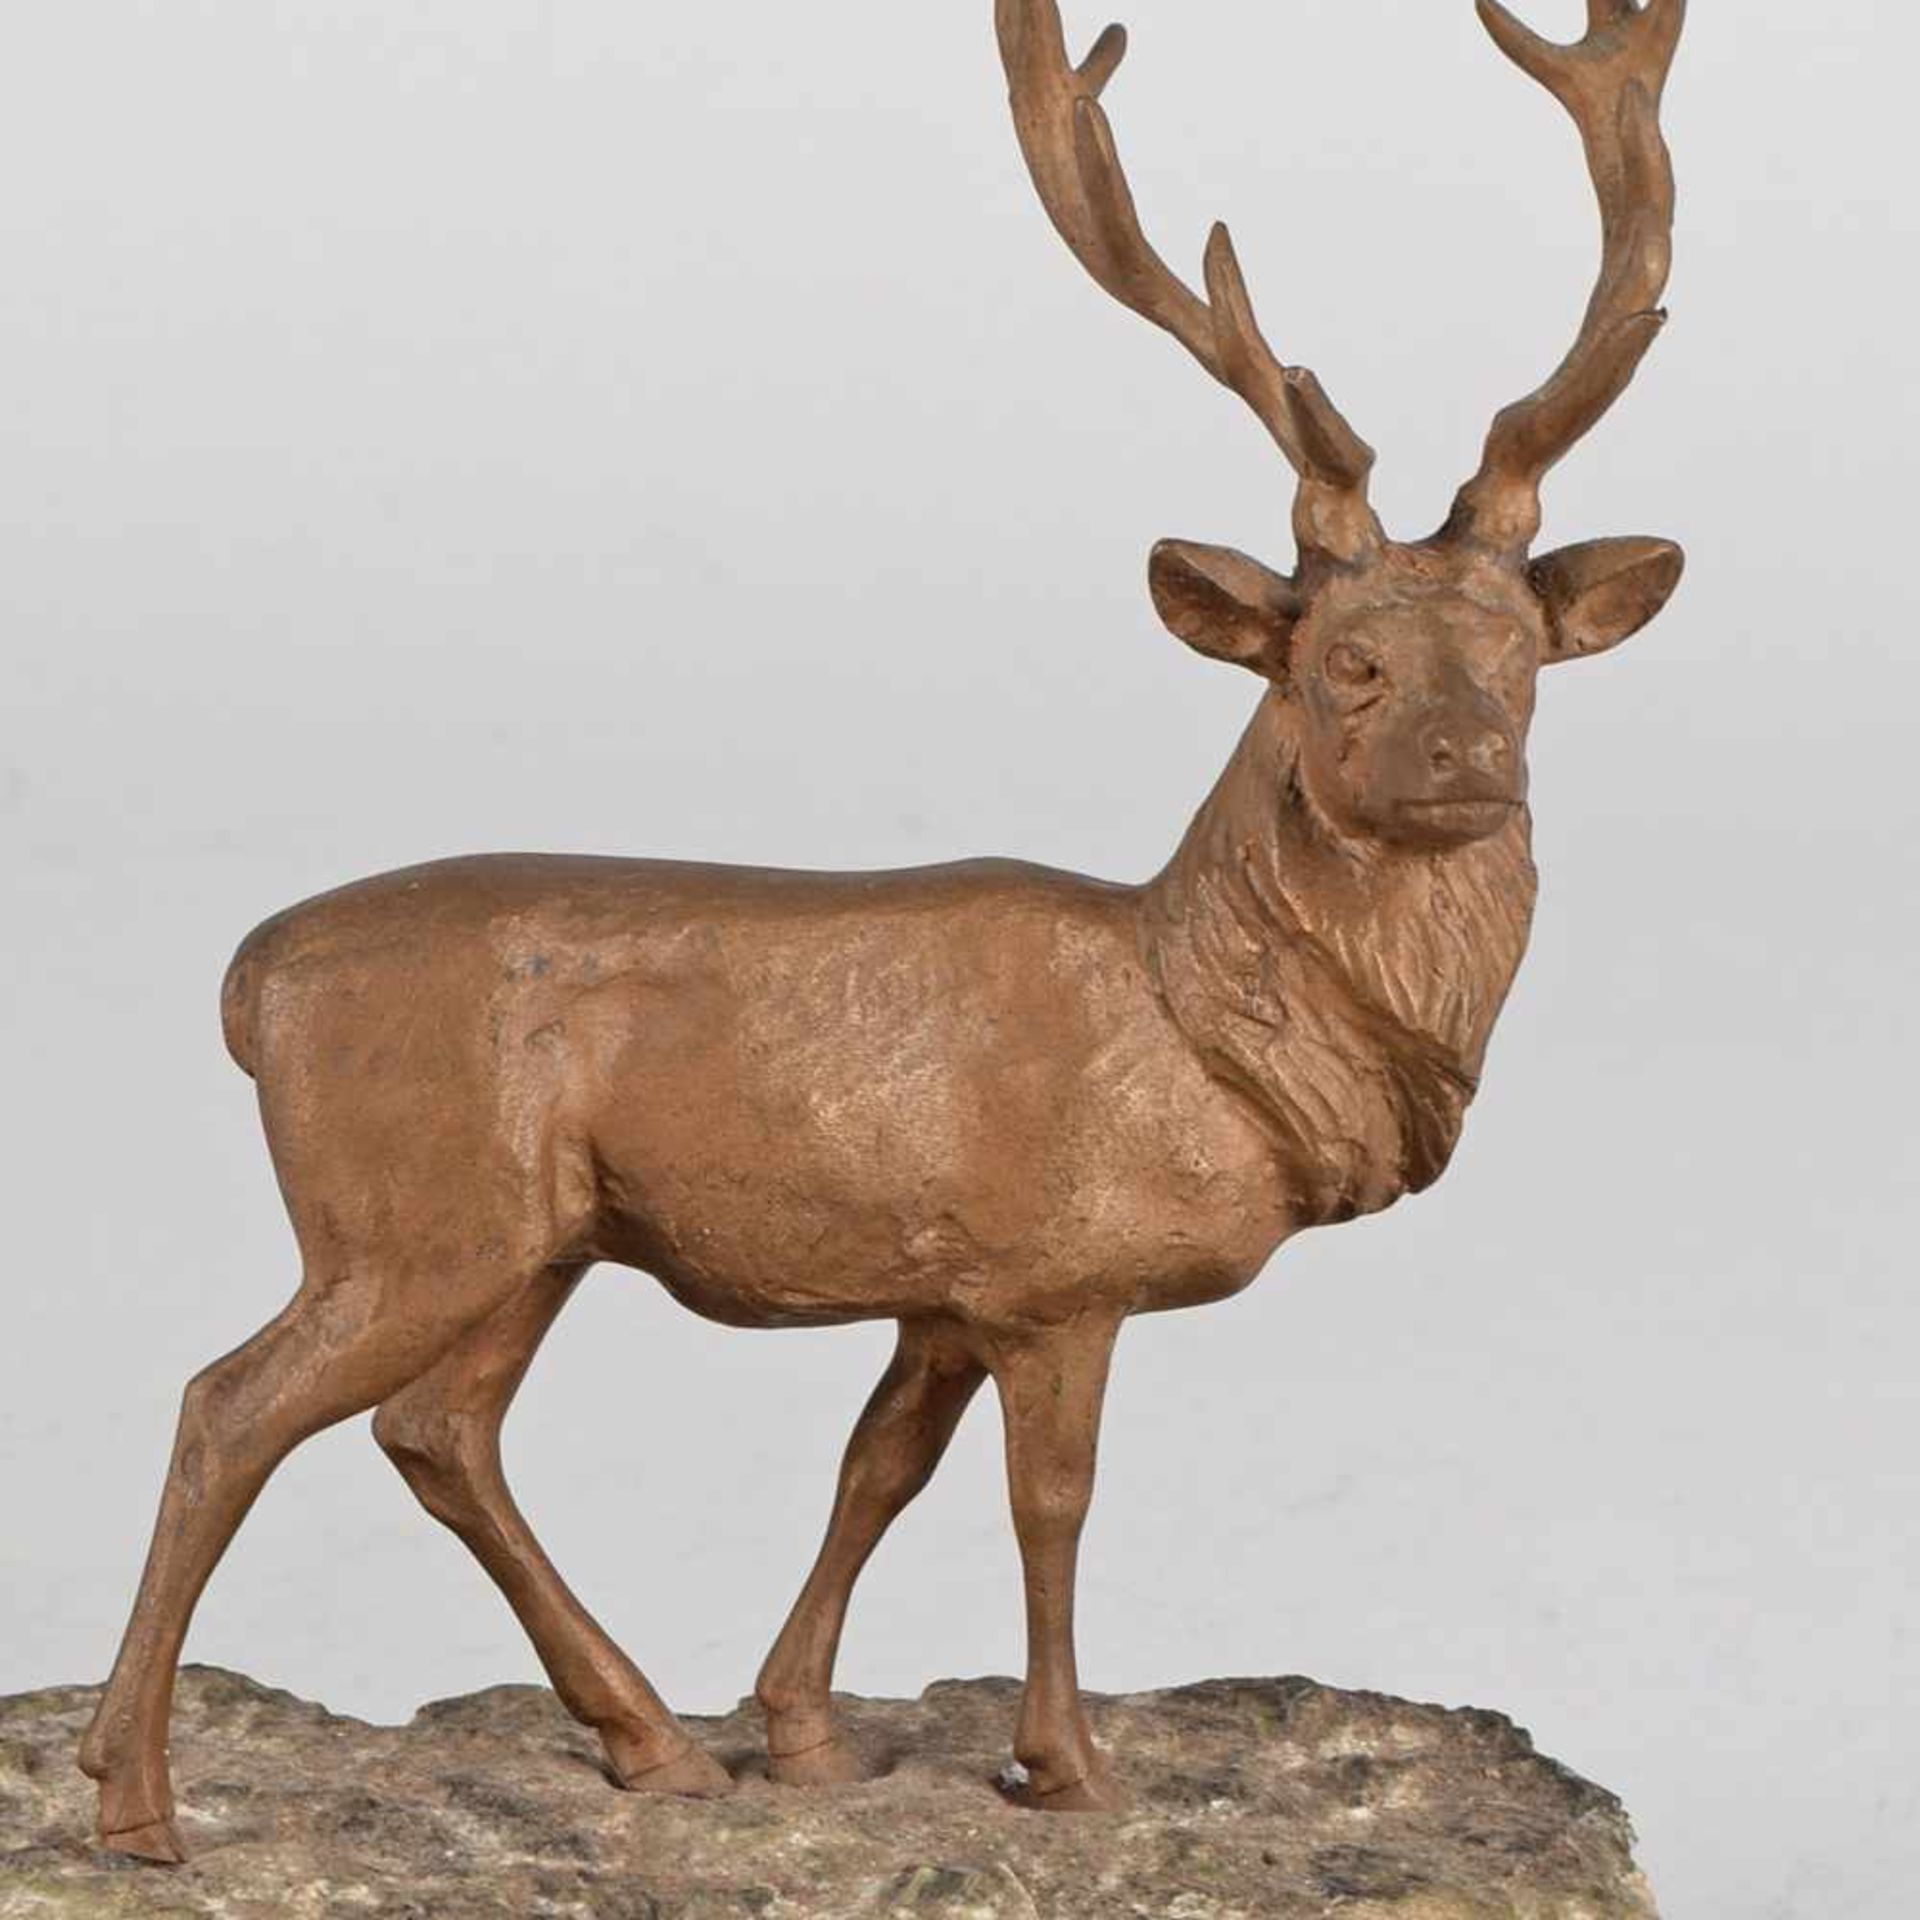 Stattlicher Hirsch Bronze, in mattem Braun patiniert, Standfigur eines Hirsches mit prächtigem